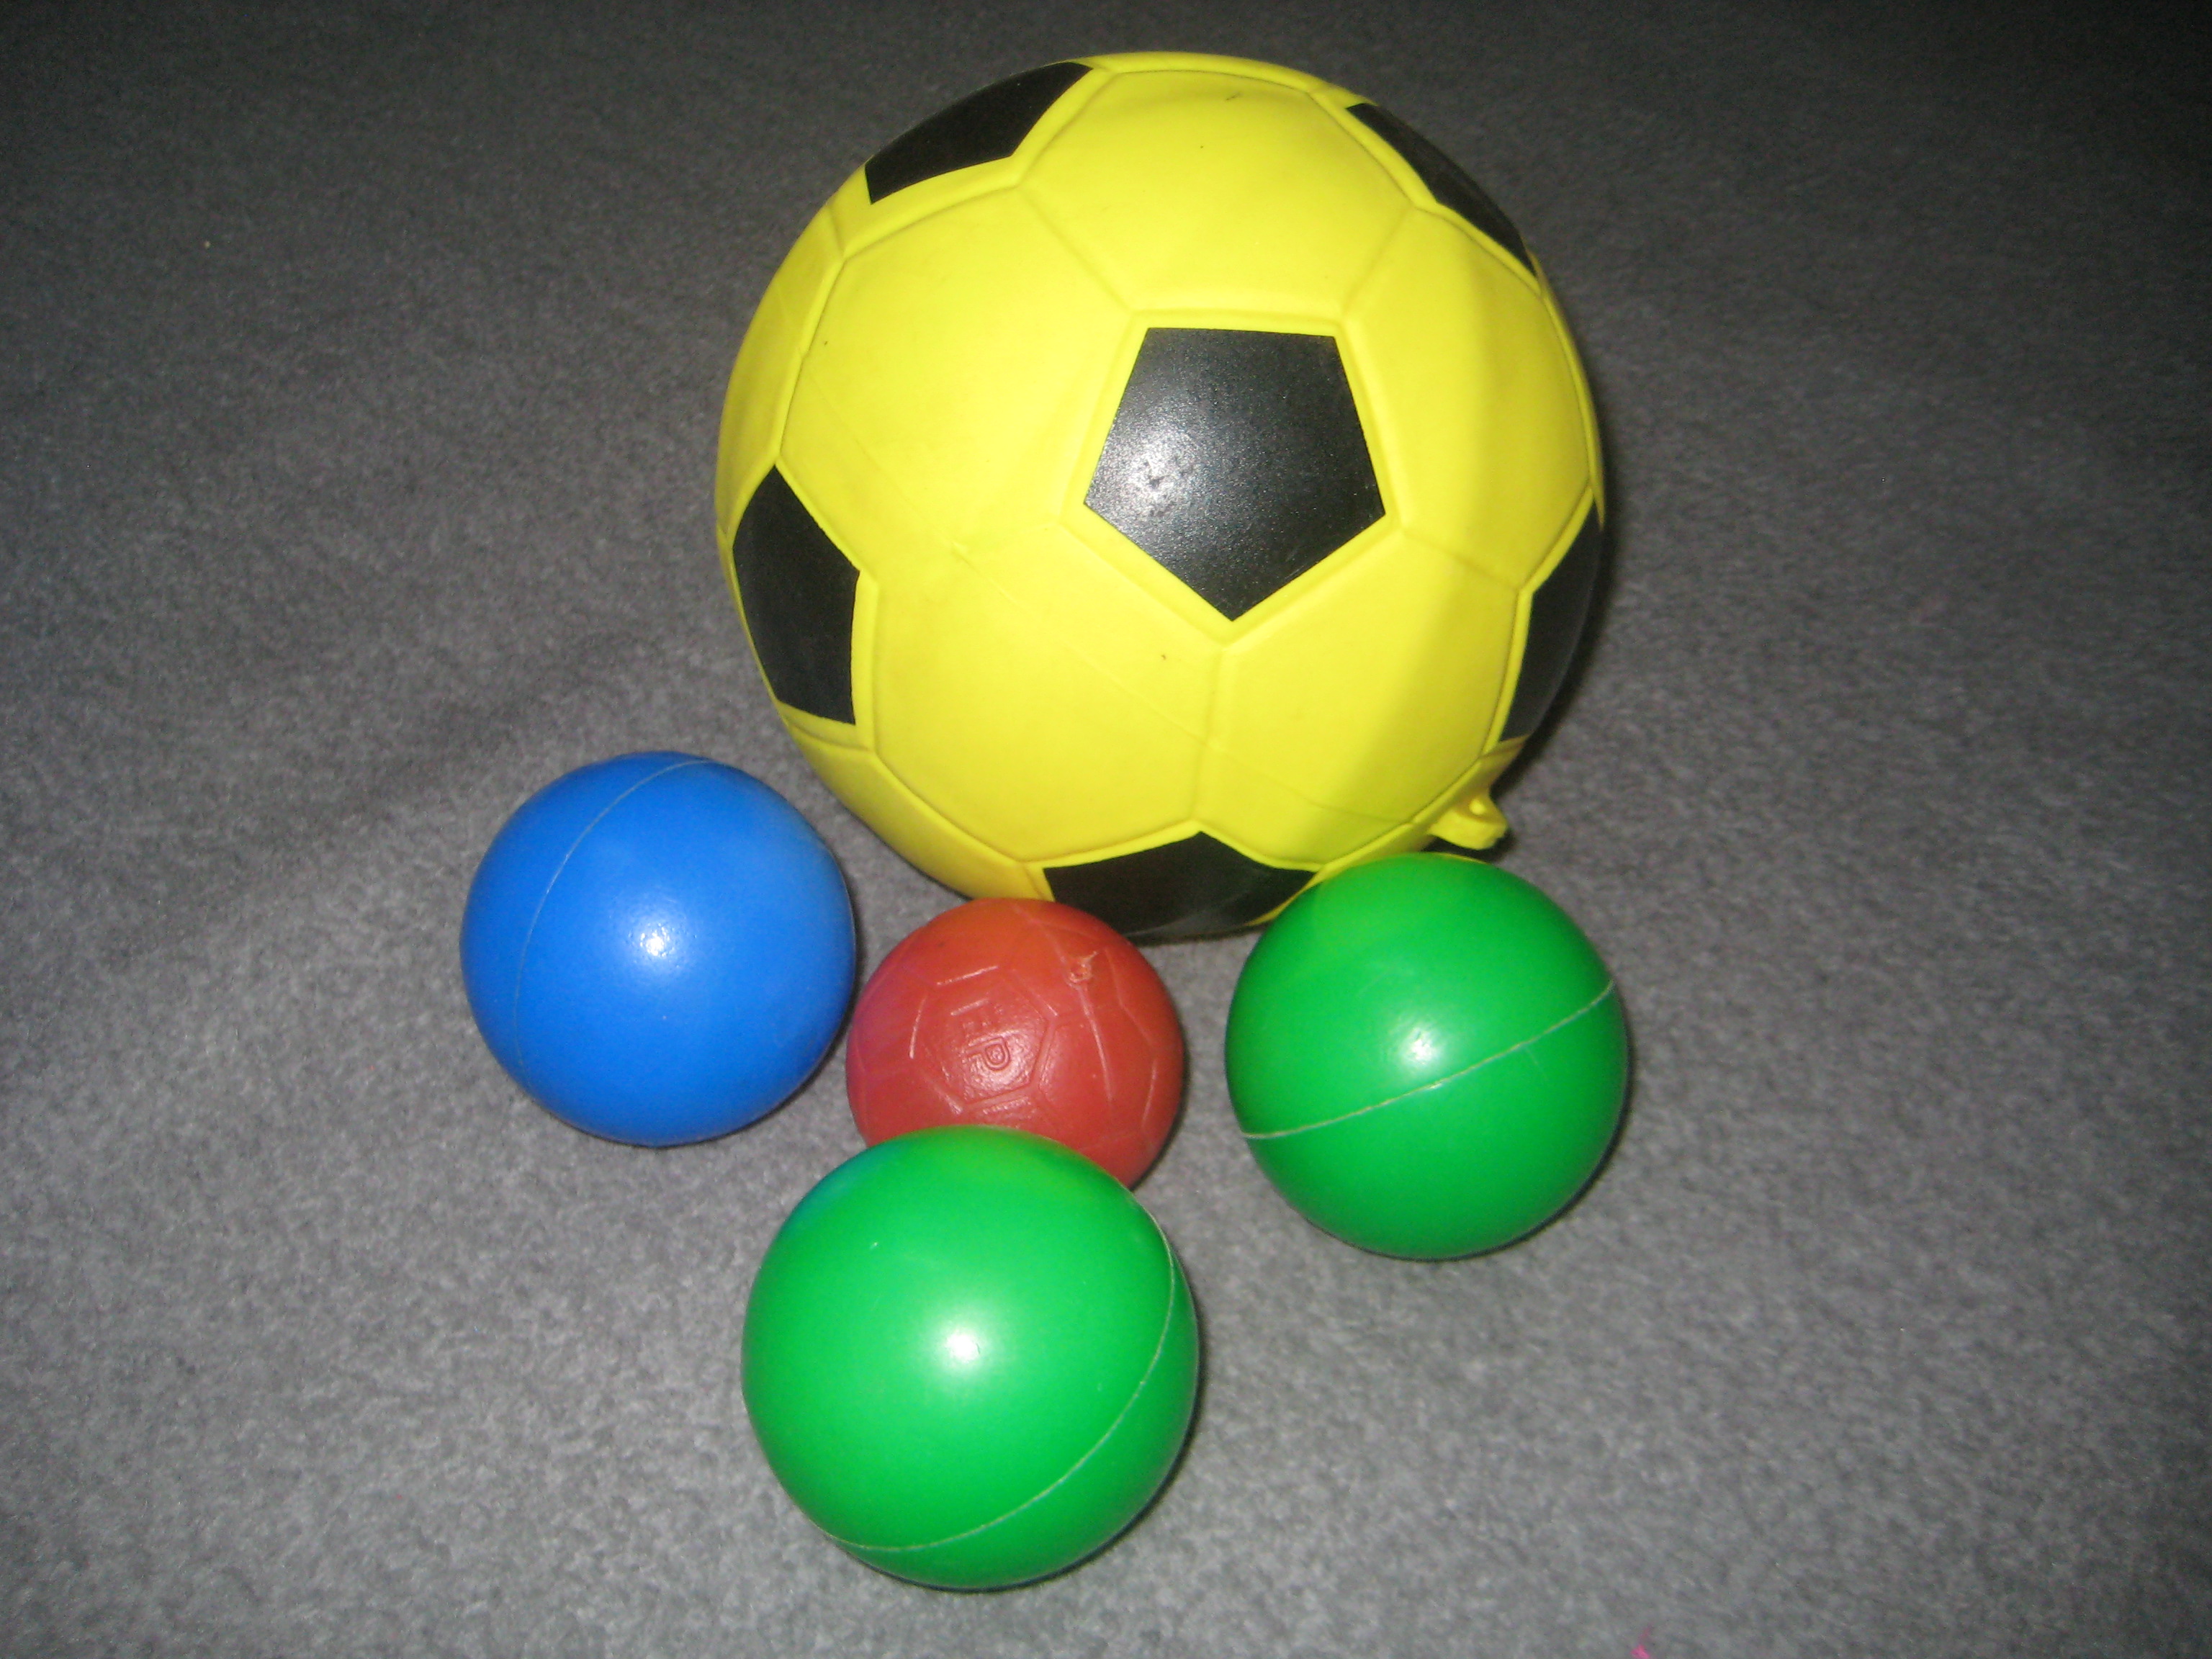 Ball - Wikipedia